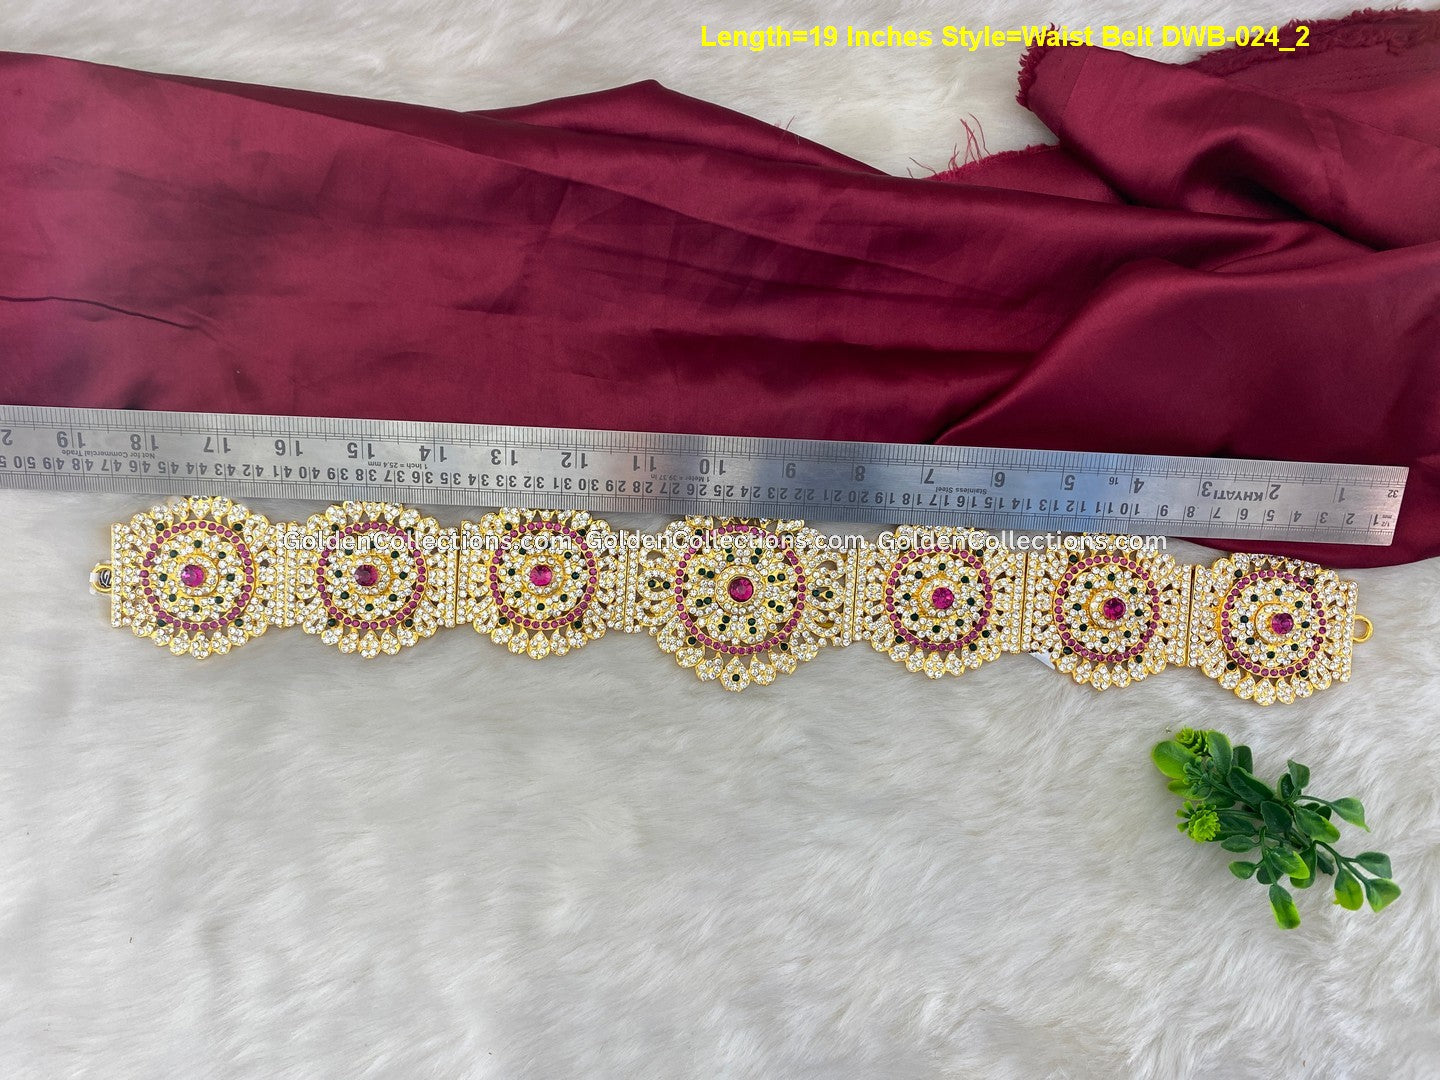 Hindu Goddess Waist Belt-Graceful Adornments for Worship - DWB-024 2